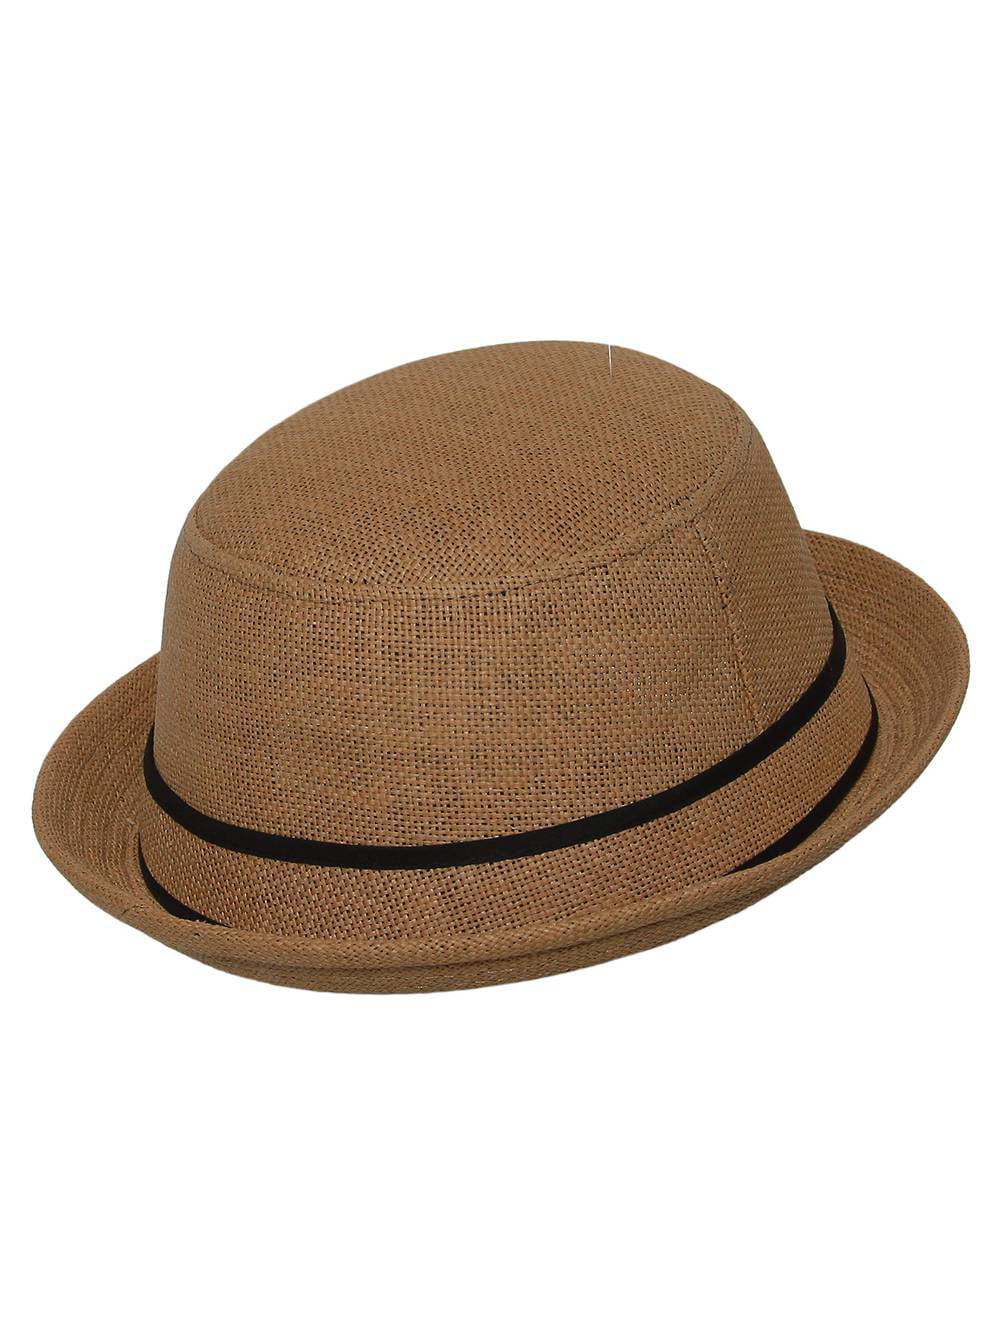 Tan Bowler Straw Fedora Hat